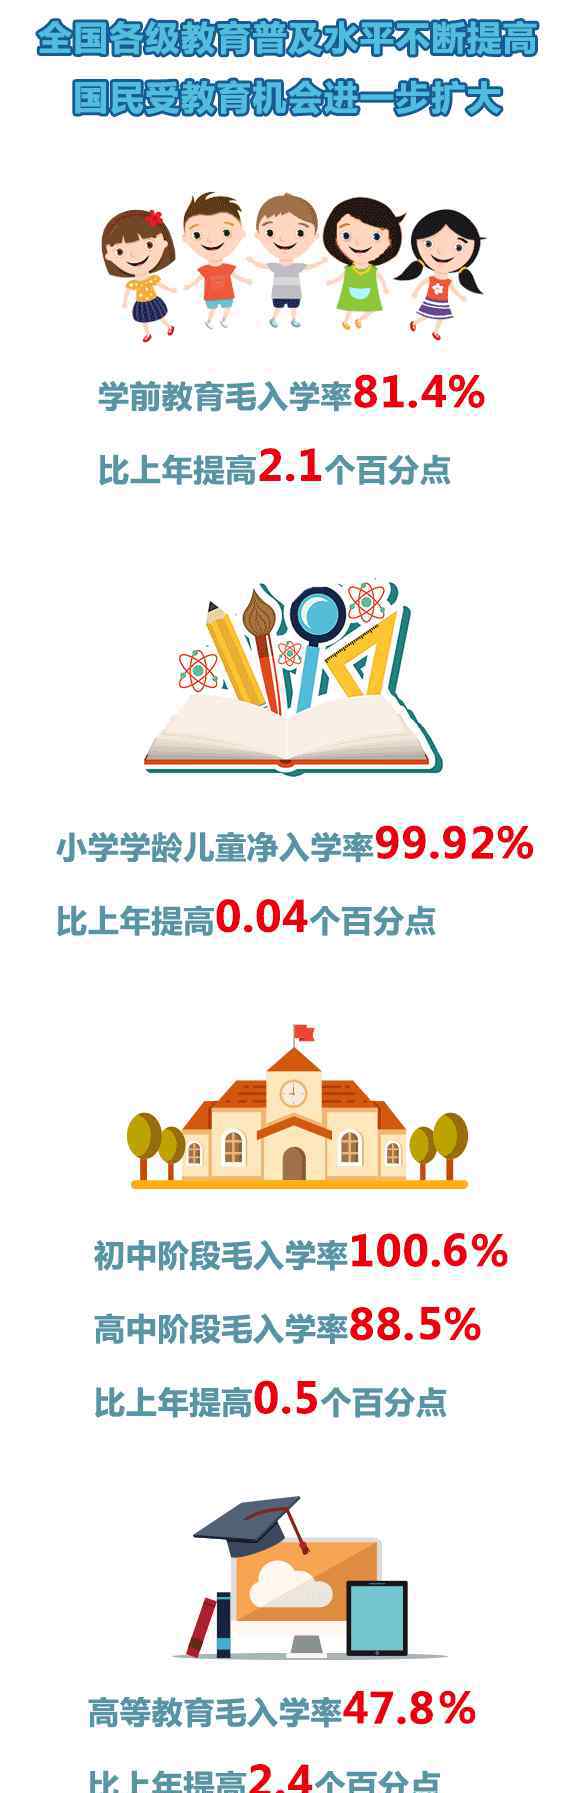 中国高校招生 2018高考共招生790.99万人，本科＞专科！2019高考招生人数再涨？